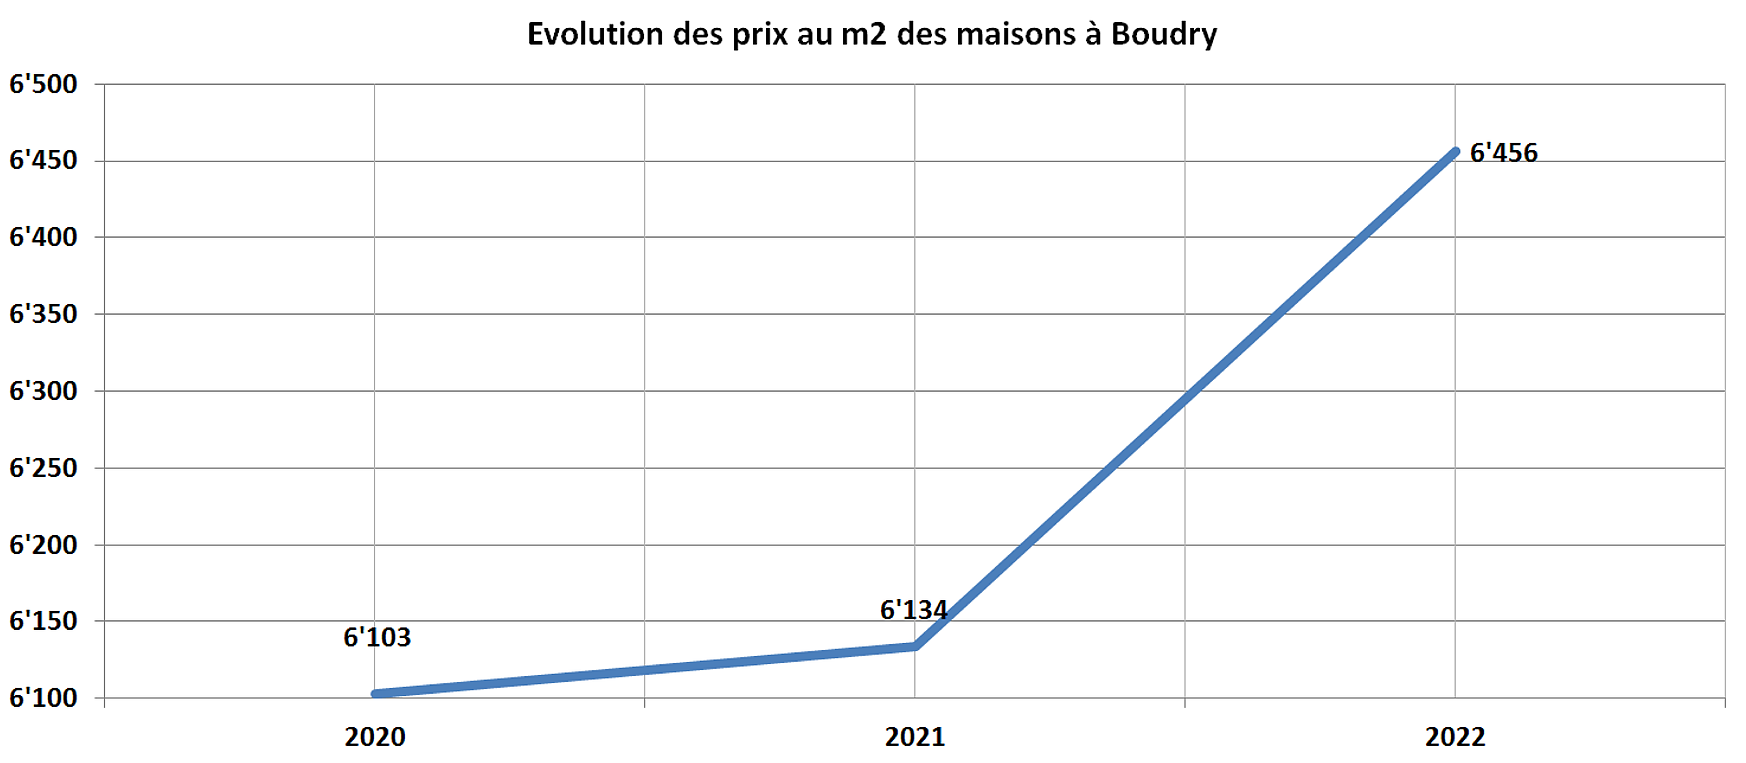 evolution prix m2 maison boudry 2022